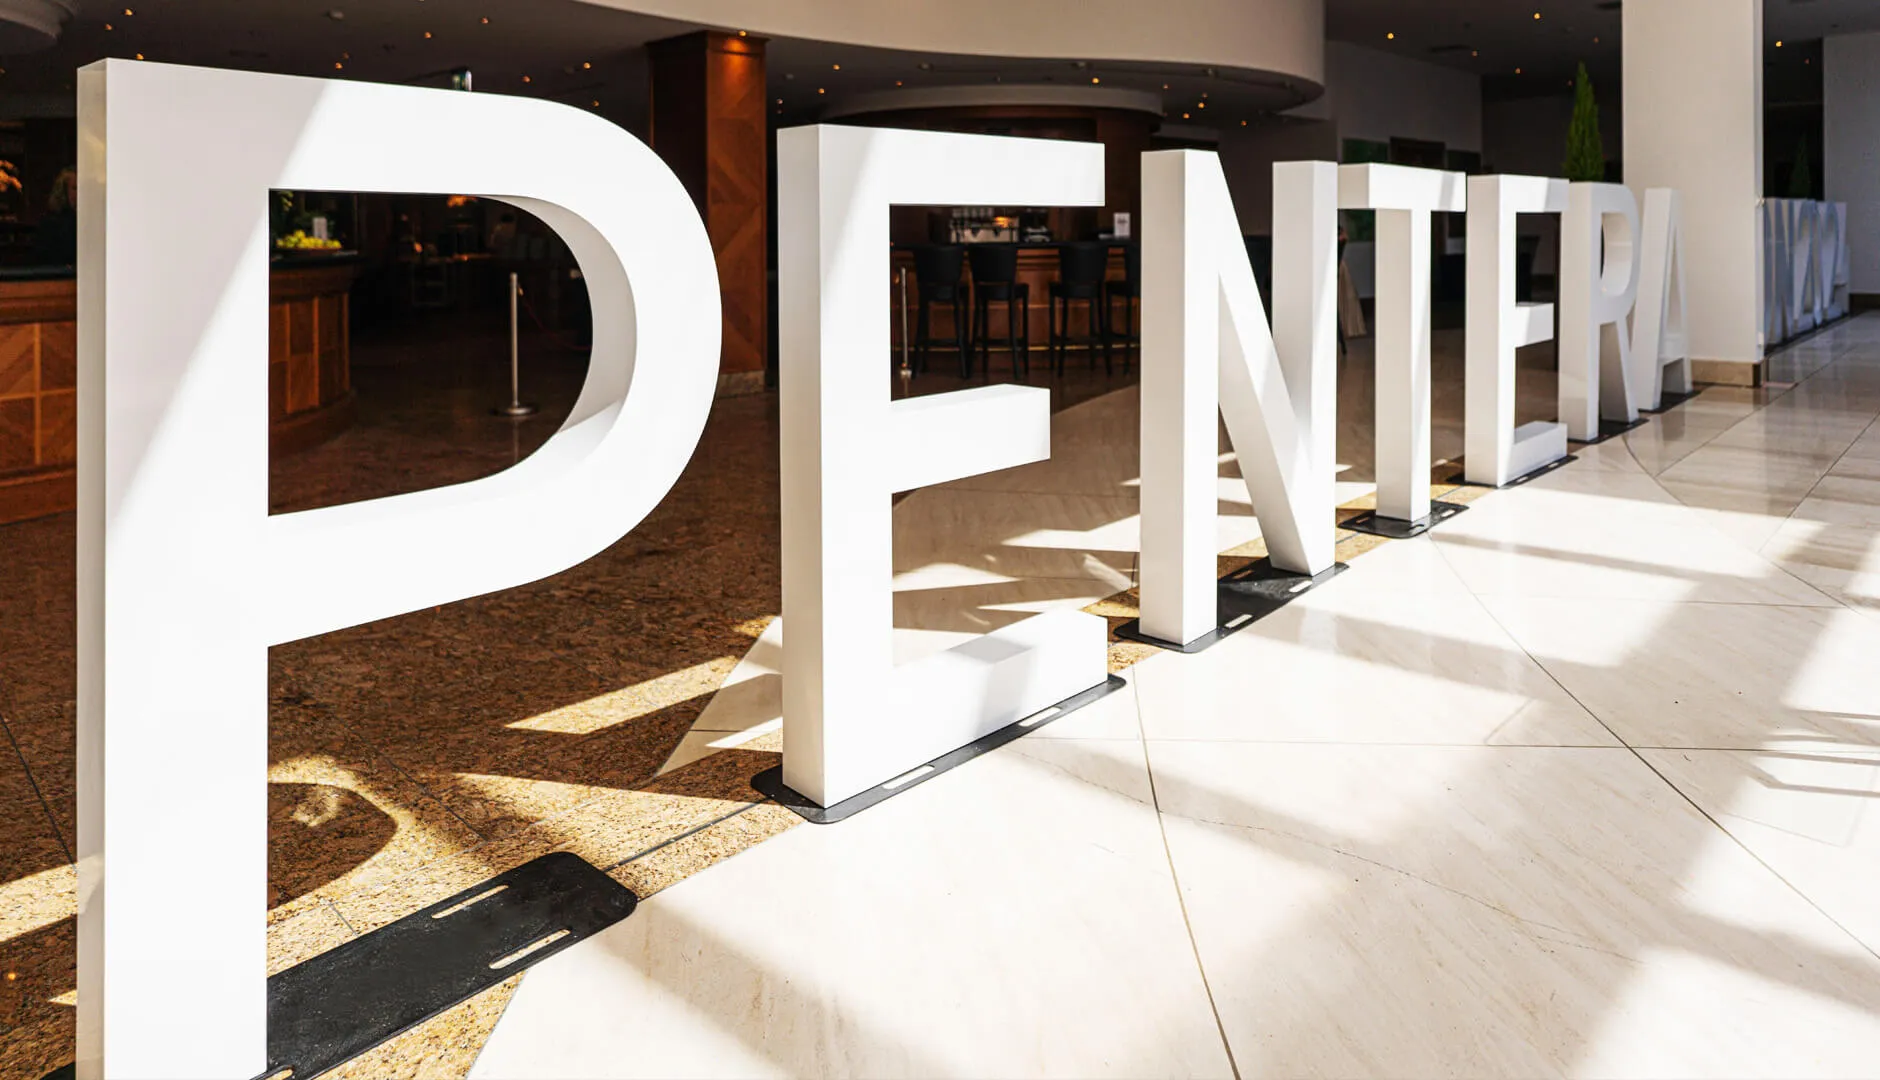 Pentera groot formaat 3D staande letters